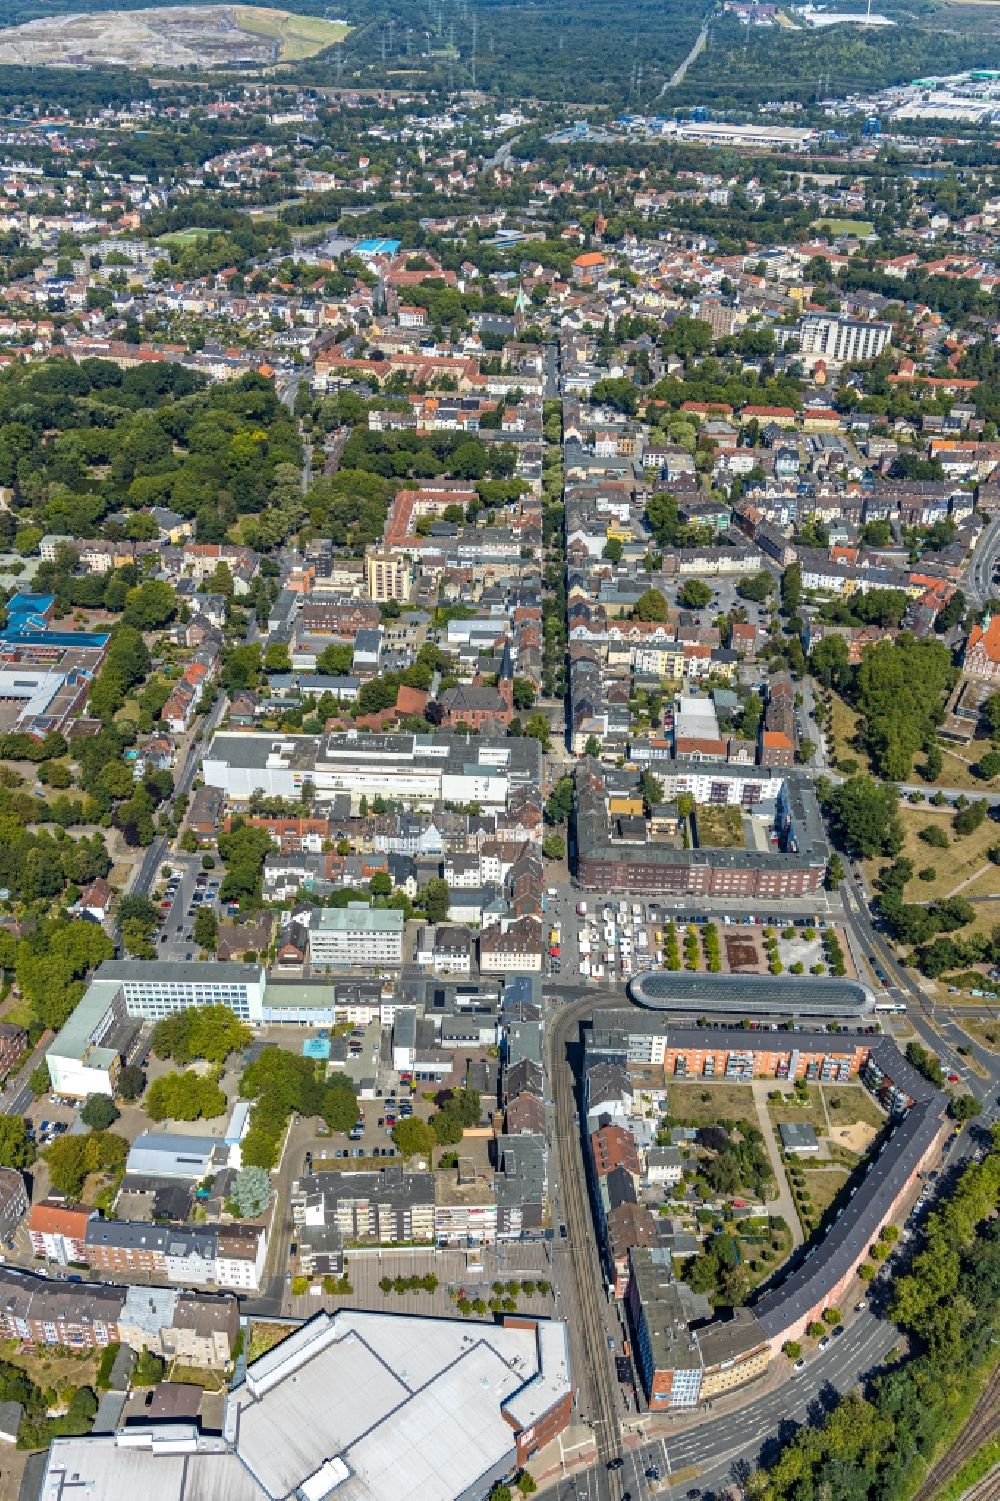 Luftbild Herne - Stadtzentrum im Innenstadtbereich entlang der Hauptstraße im Ortsteil Wanne-Eickel in Herne im Bundesland Nordrhein-Westfalen, Deutschland